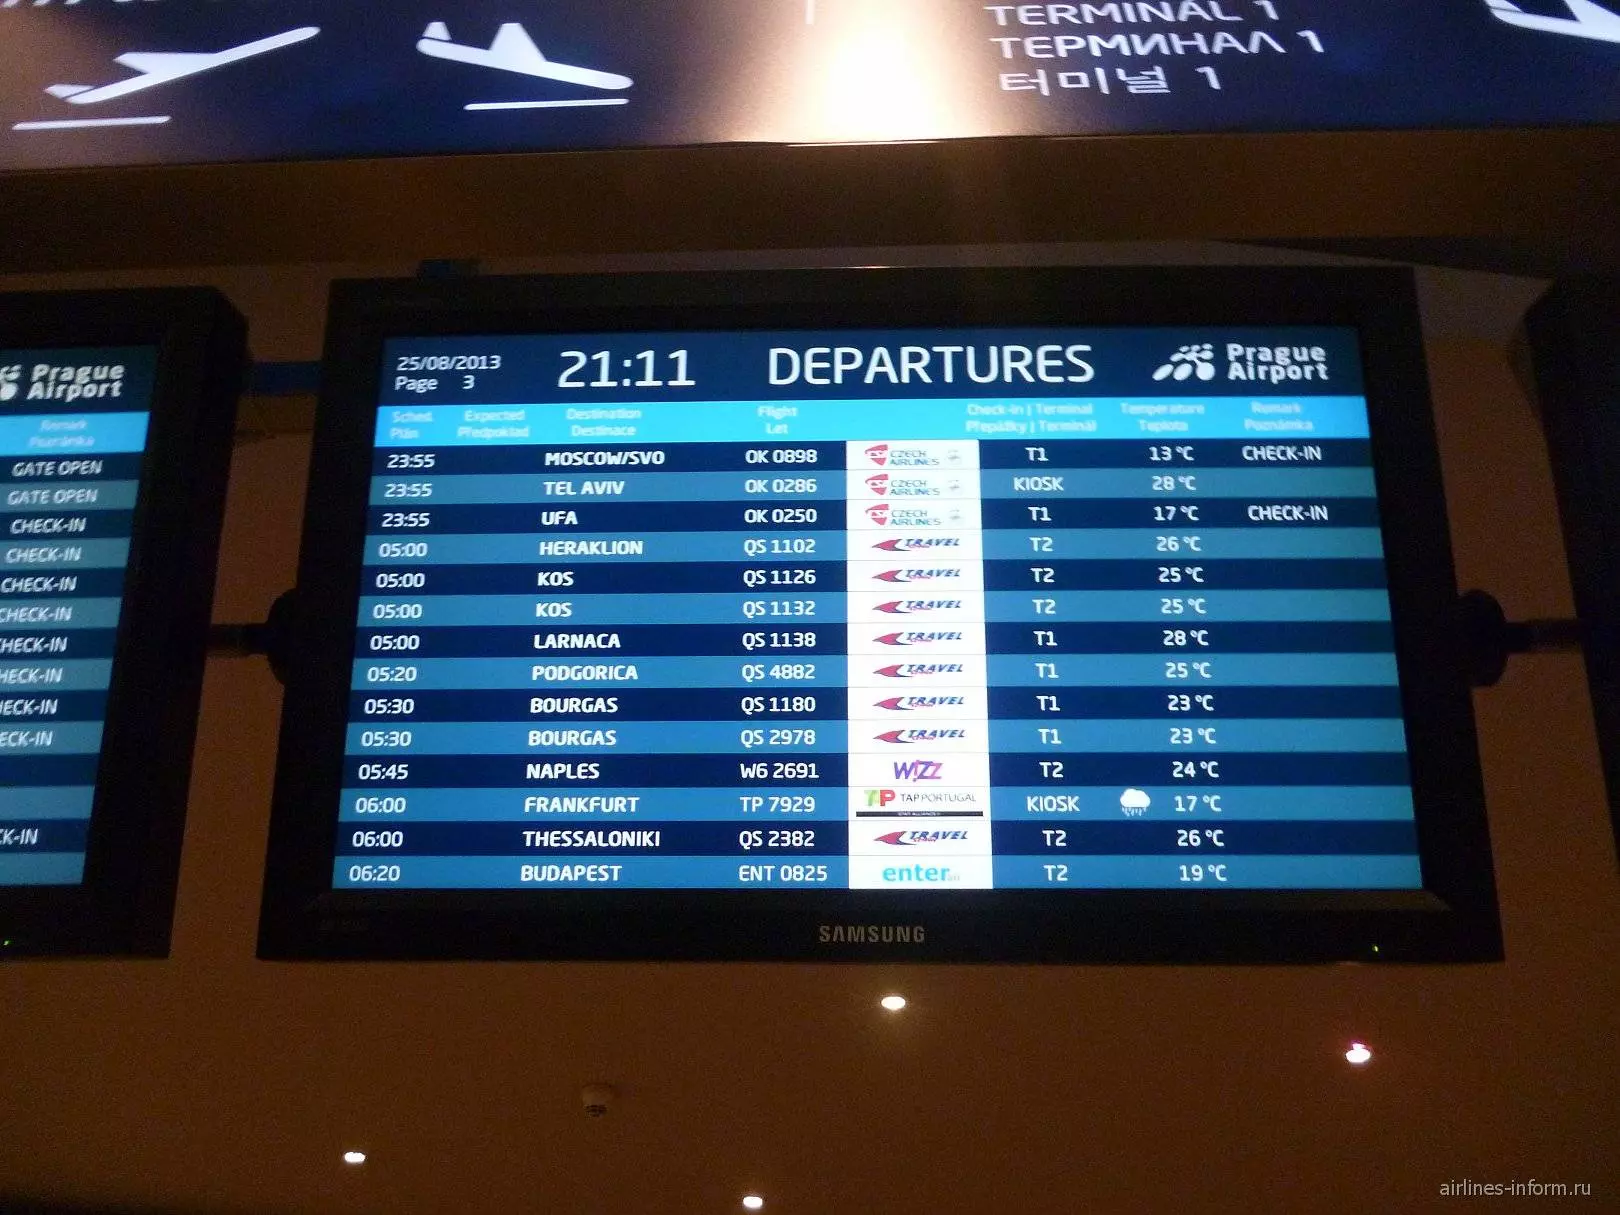 Аэропорт праги имени вацлава гавела «рузыне». онлайн-табло прилетов и вылетов, схема аэропорта, расписание рейсов, как добраться, отели